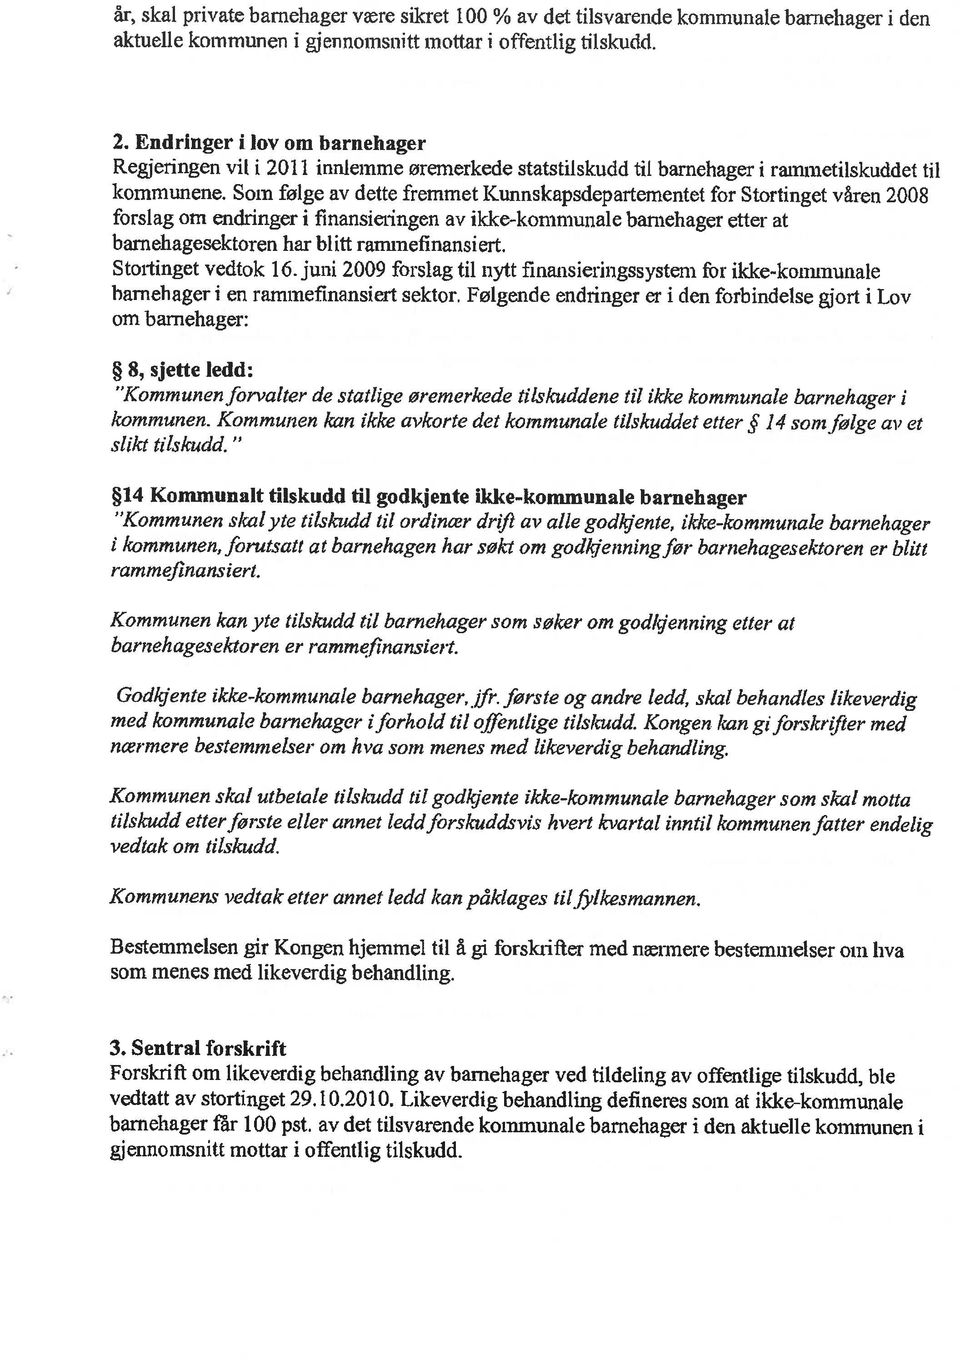 våren 2008 forslag om endringer i finansieringen av ikke-kommunale barnehager etter at barnehagesektoren har blitt rammeflnansiert, Stortinget vedtok 16.